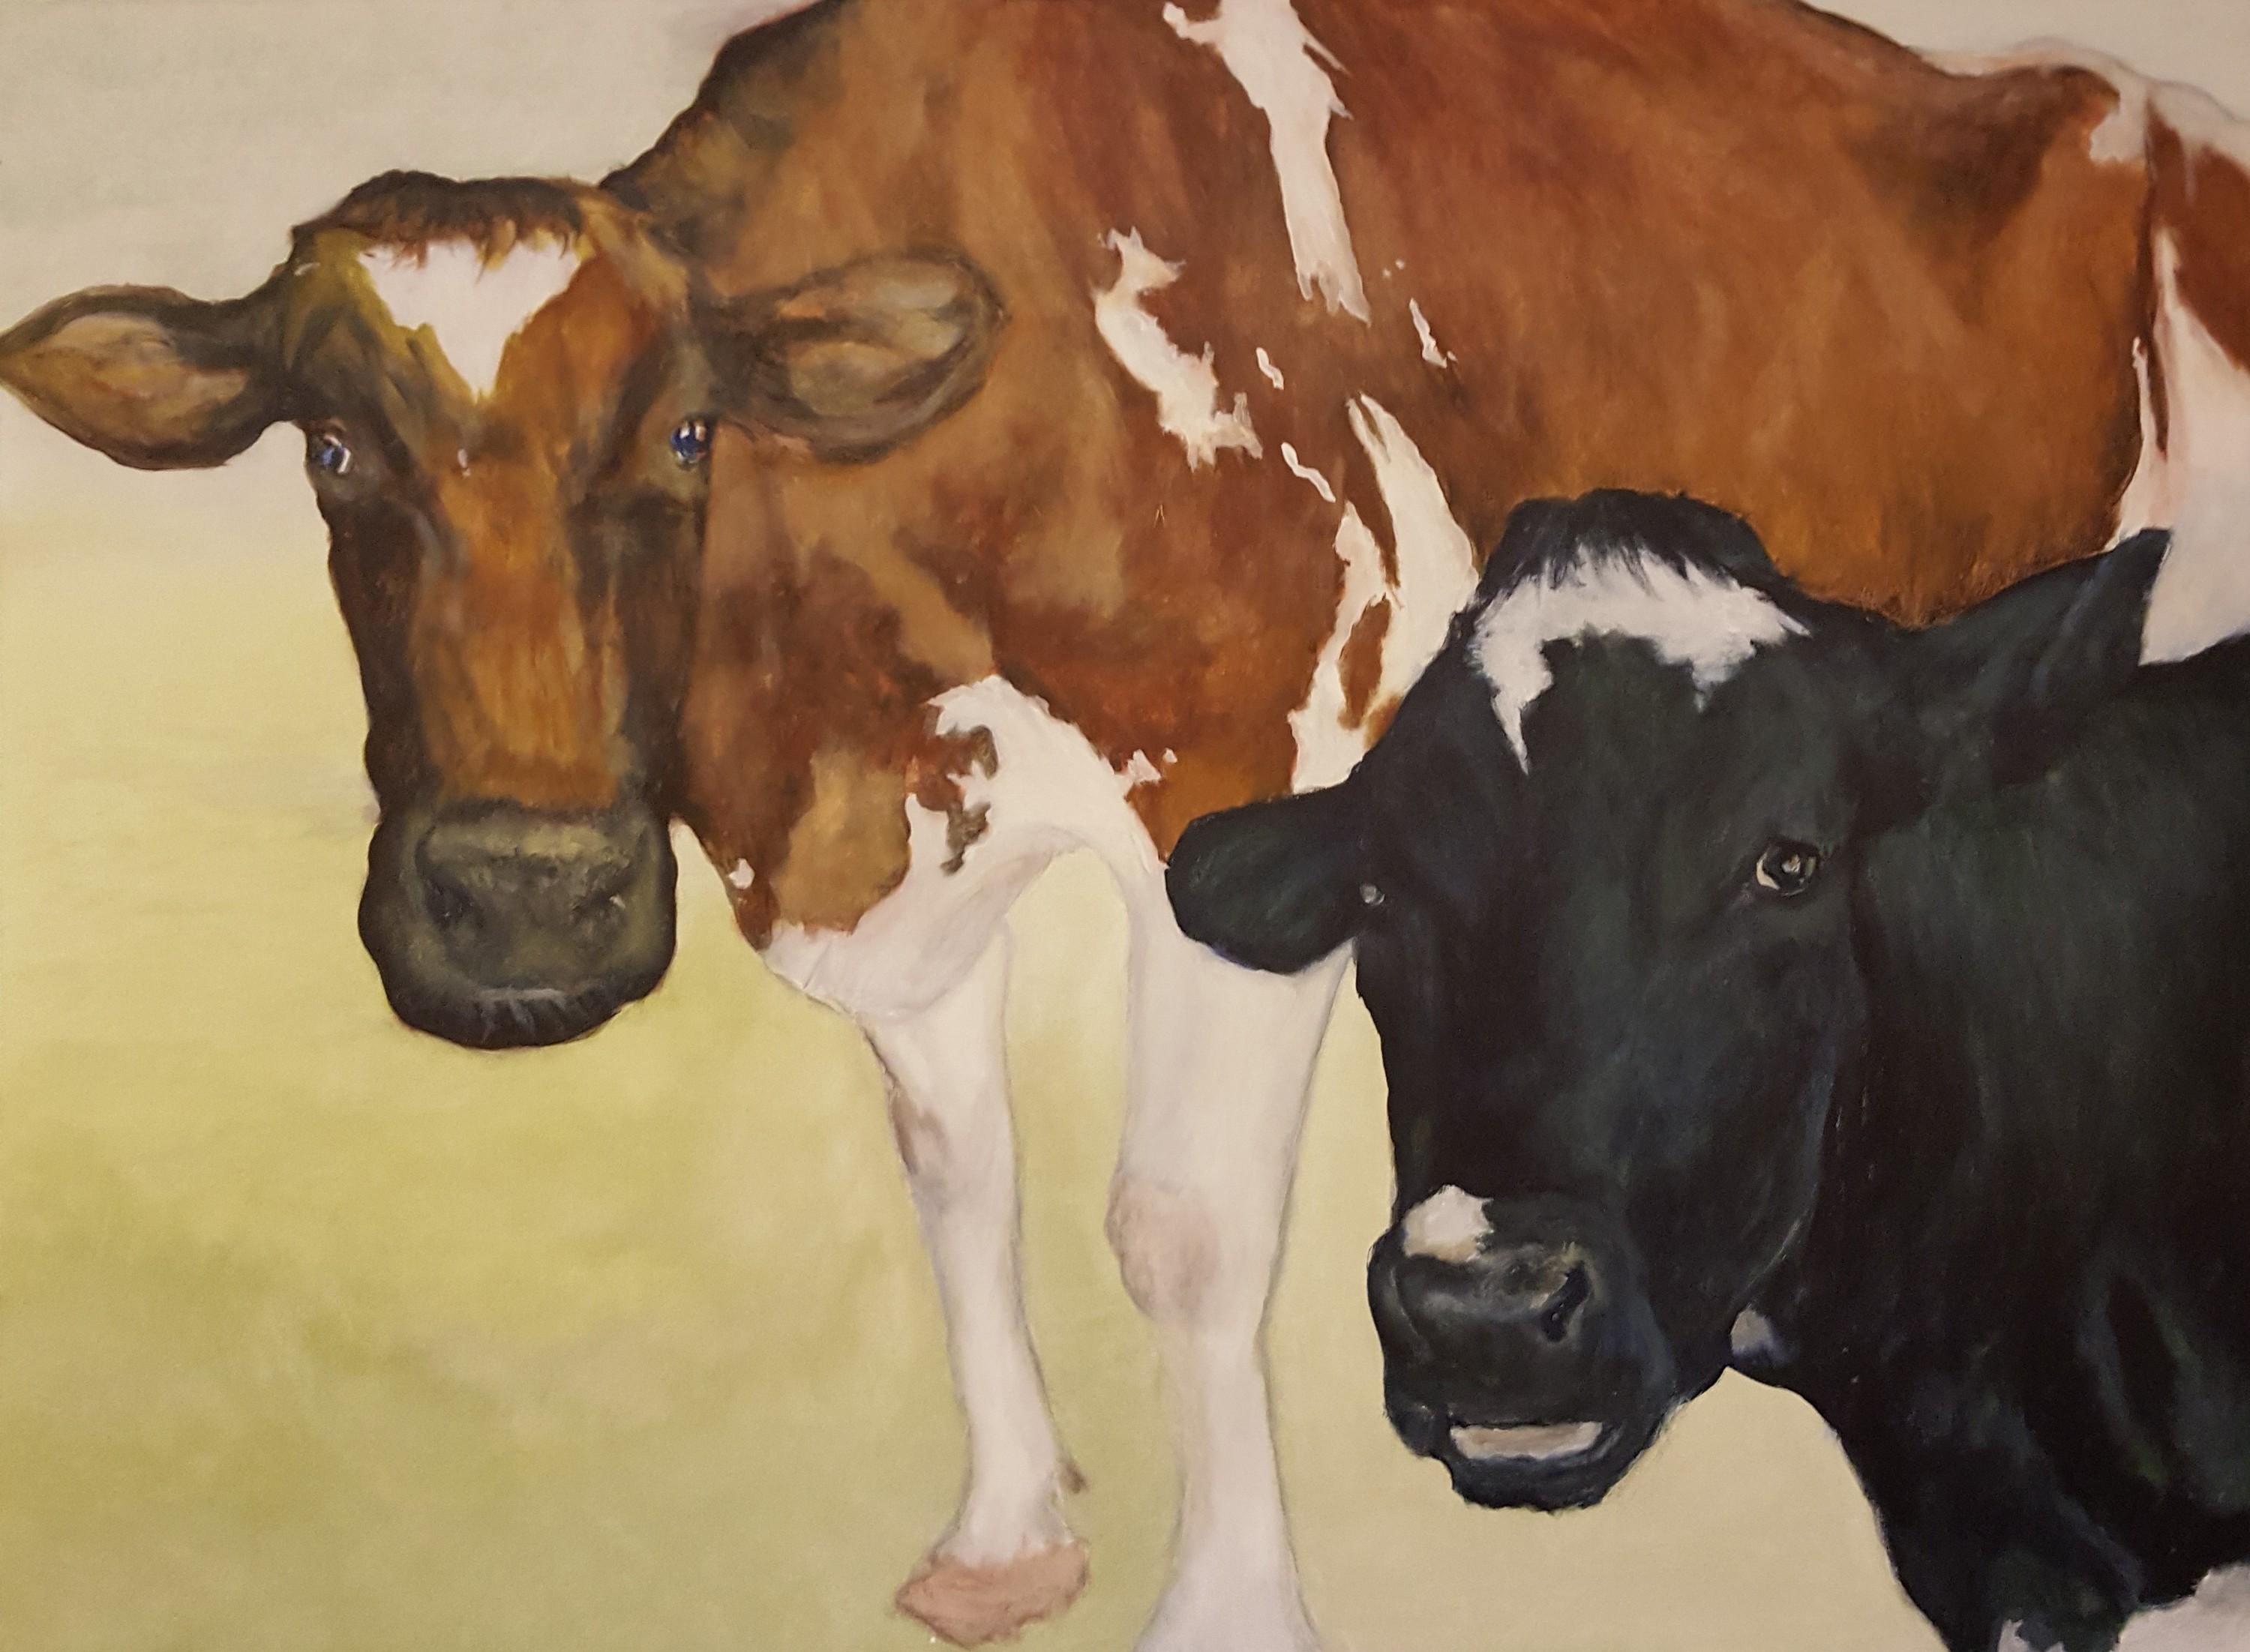 2017 04 07 patrick family cows ayrshire holstein acrylic 4 x3 x.75 800 t98rvx